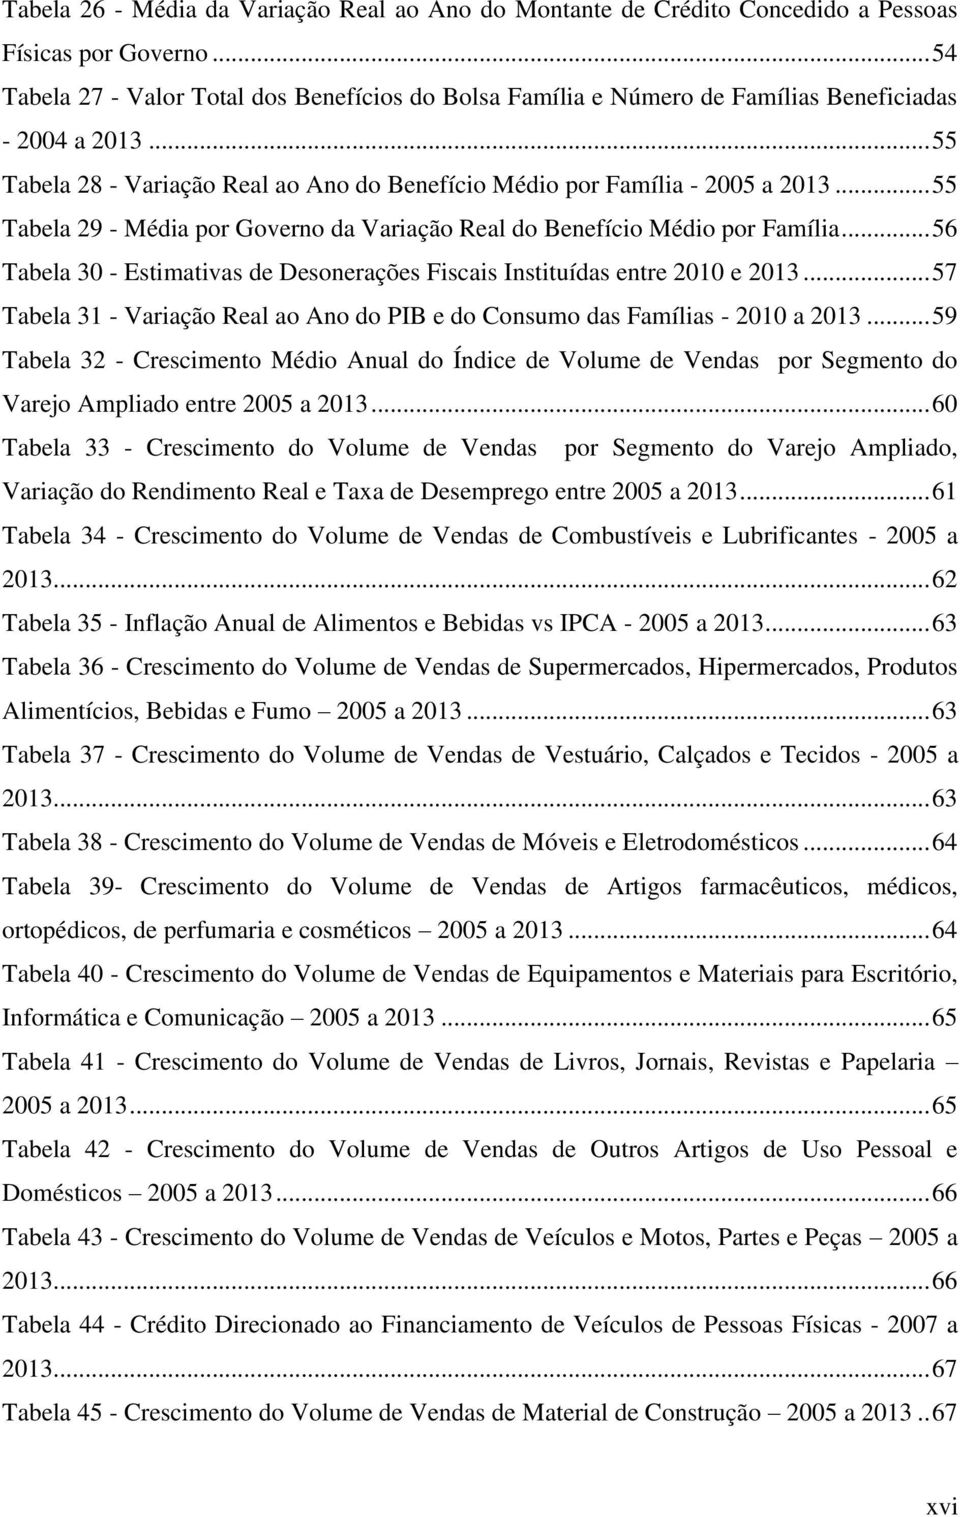 .. 55 Tabela 29 - Média por Governo da Variação Real do Benefício Médio por Família... 56 Tabela 30 - Estimativas de Desonerações Fiscais Instituídas entre 2010 e 2013.